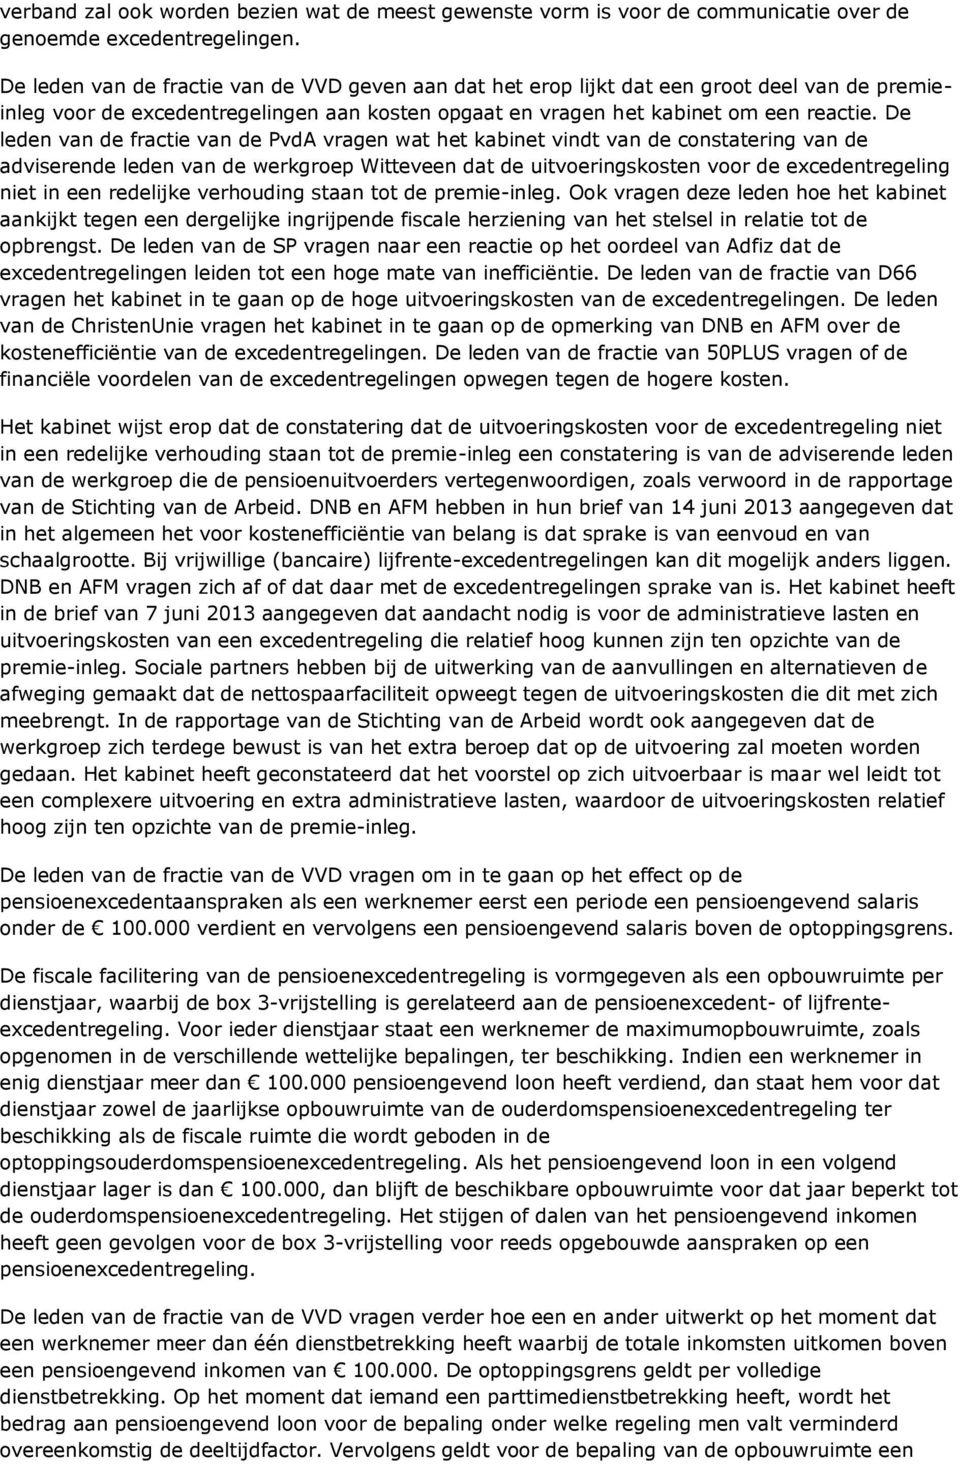 De leden van de fractie van de PvdA vragen wat het kabinet vindt van de constatering van de adviserende leden van de werkgroep Witteveen dat de uitvoeringskosten voor de excedentregeling niet in een